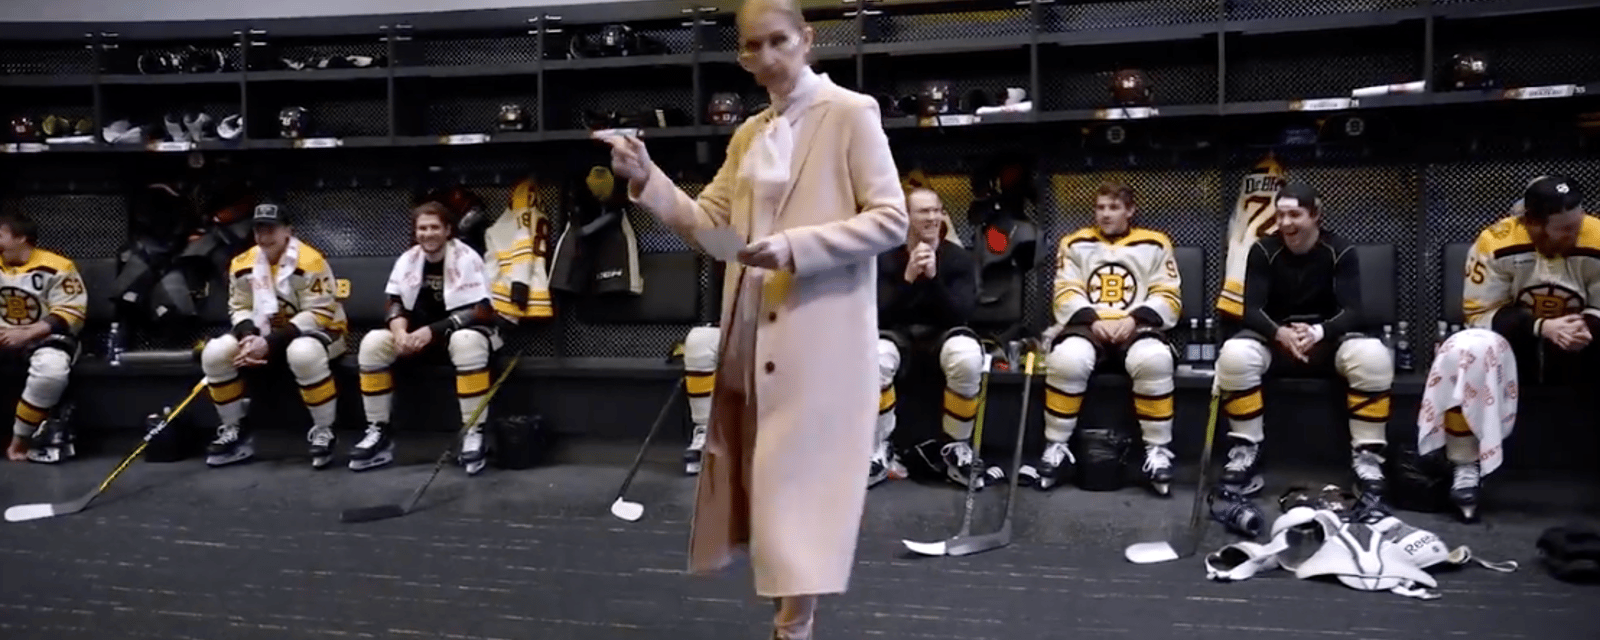 Céline Dion surprend les joueurs des Bruins en faisant l'annonce de l'alignement de départ